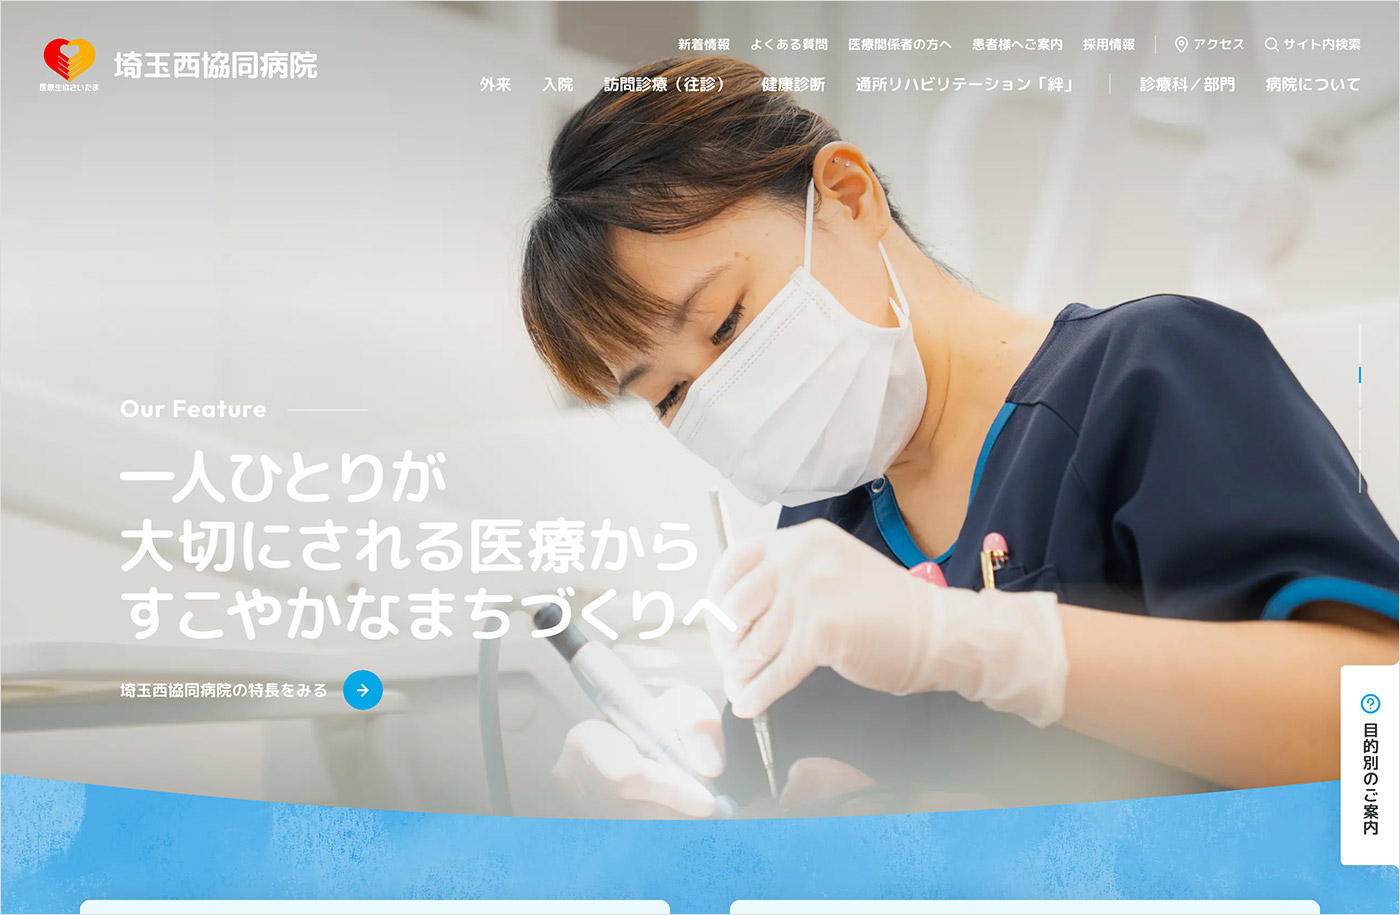 埼玉西協同病院 – 所沢市 | 医療生協さいたまウェブサイトの画面キャプチャ画像